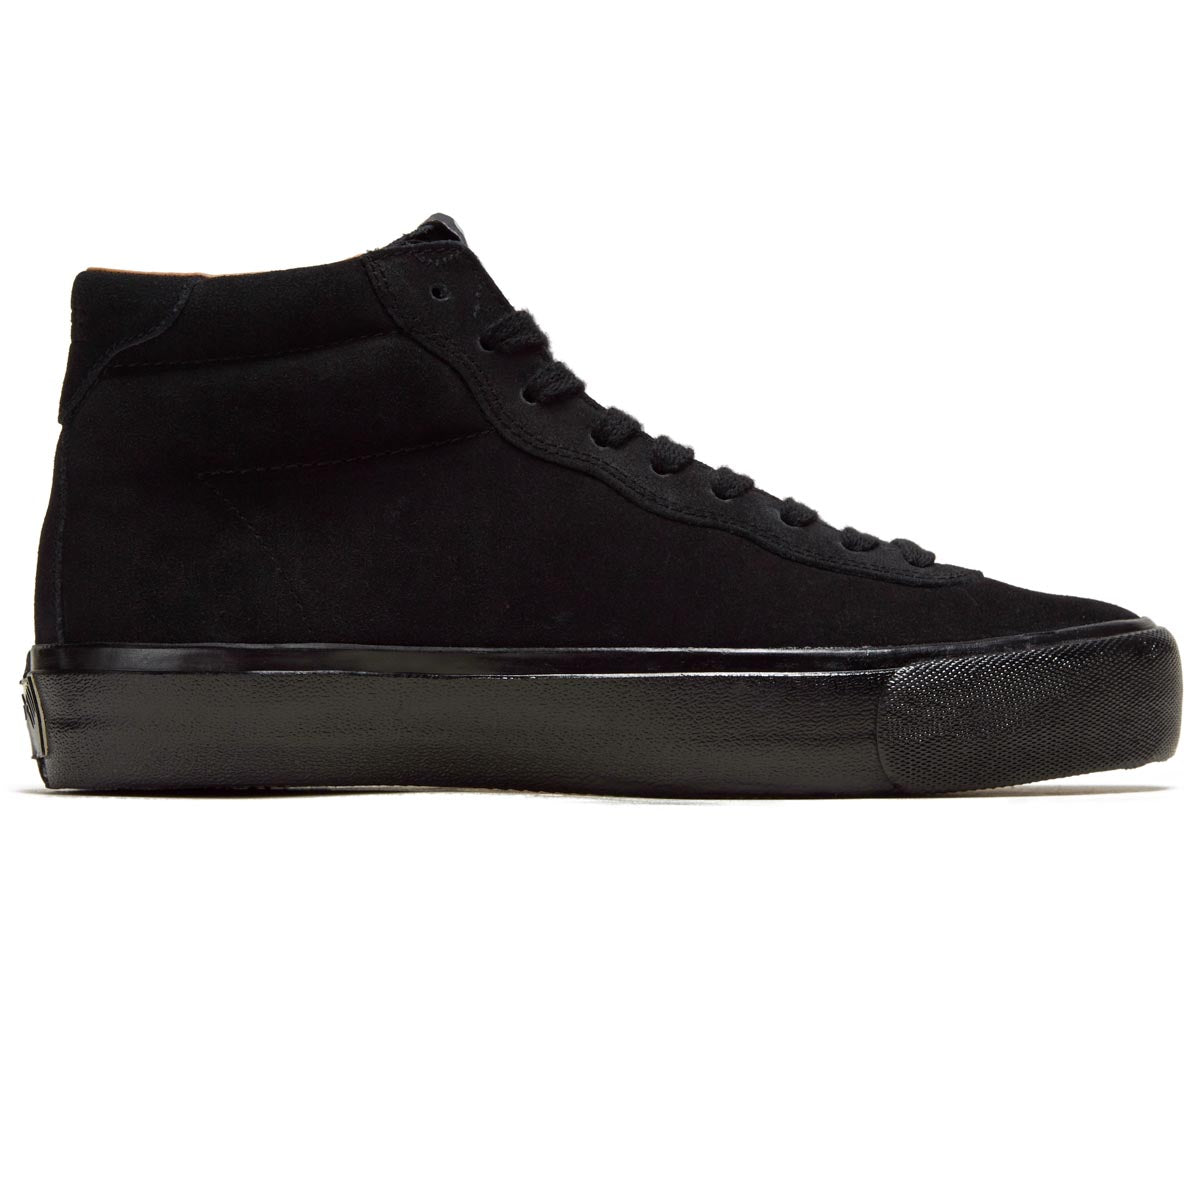 Last Resort AB VM001 Suede Hi Shoes - 3 x Black/Black image 1